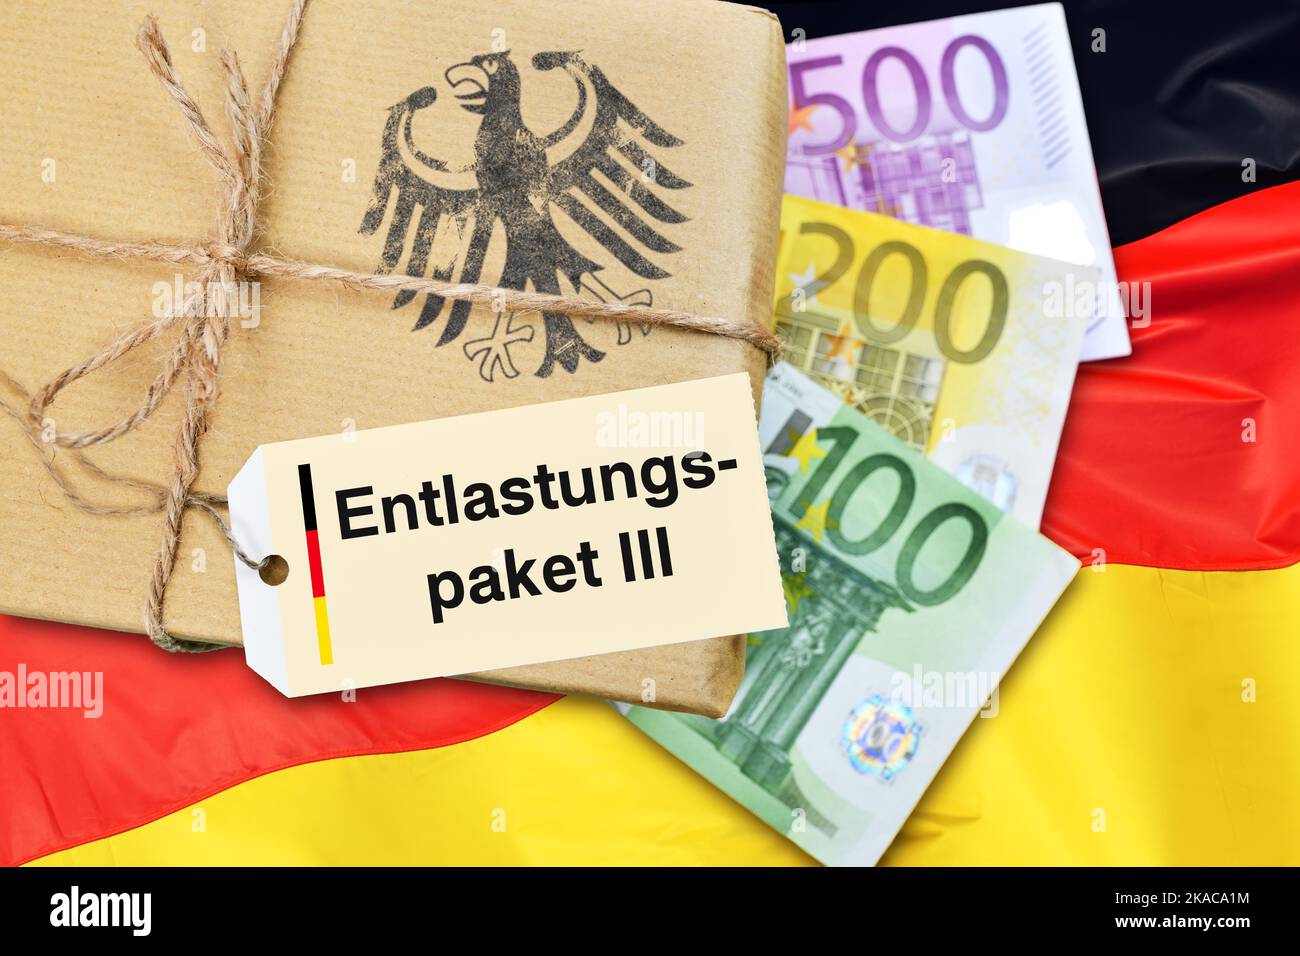 FOTOMONTAGE, Paket mit Etikett und Aufschrift Entlastungspaket III mit Geldscheinen und Deutschlandfahne Foto de stock